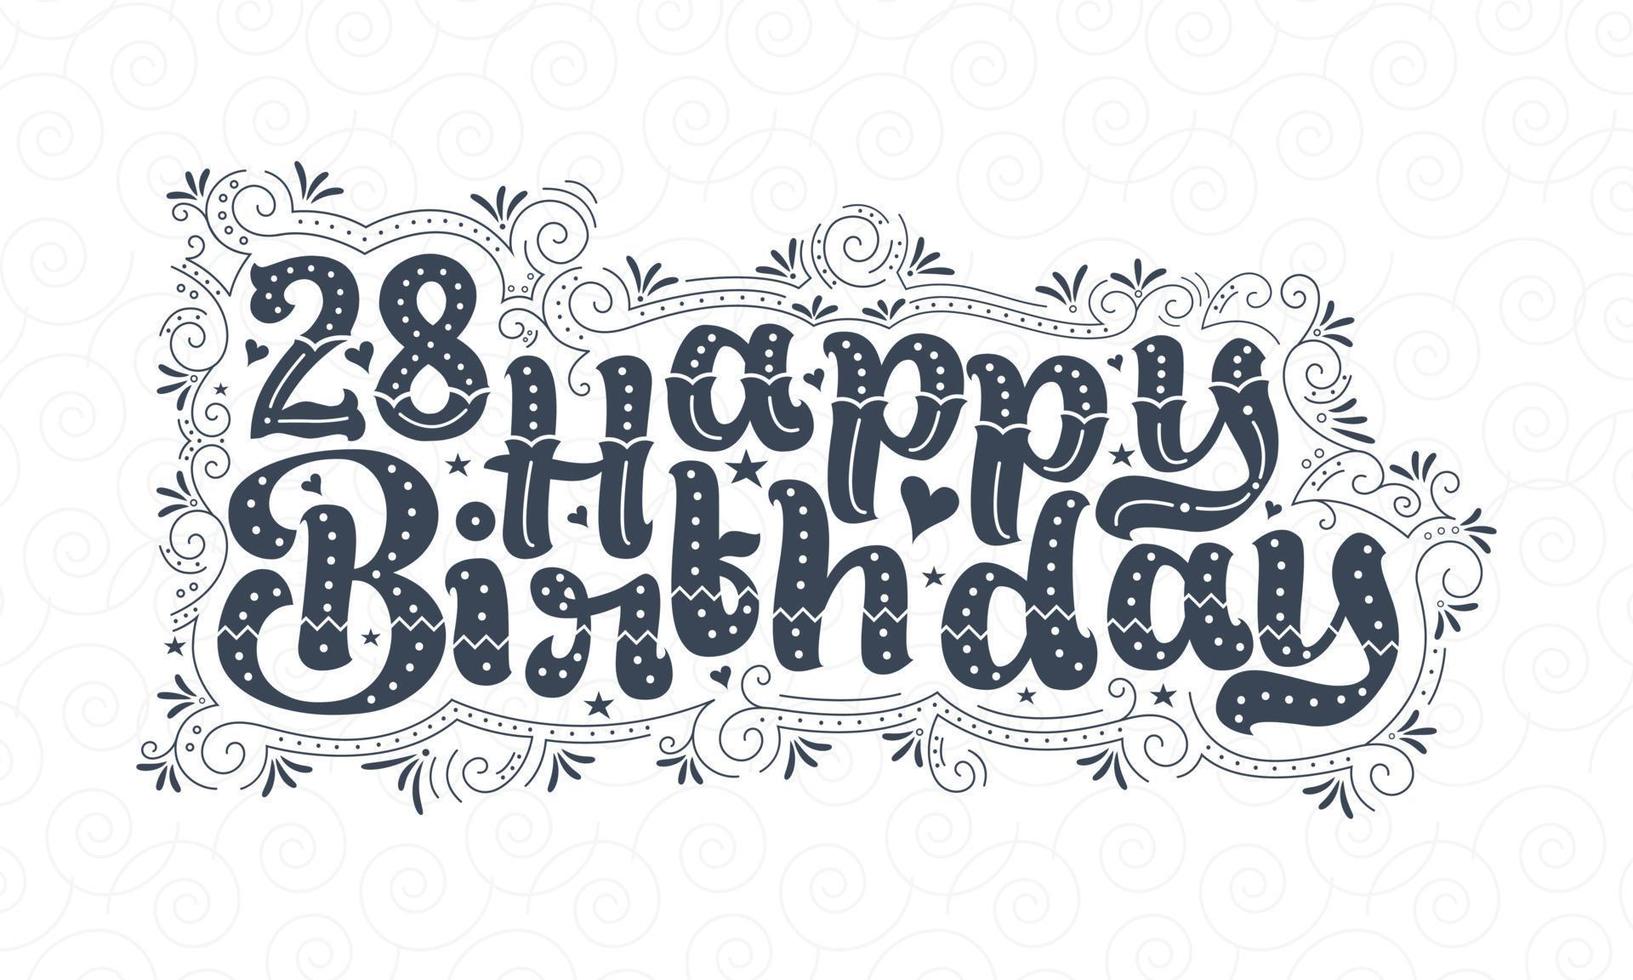 28:e grattis på födelsedagen bokstäver, 28 års födelsedag vacker typografidesign med prickar, linjer och löv. vektor